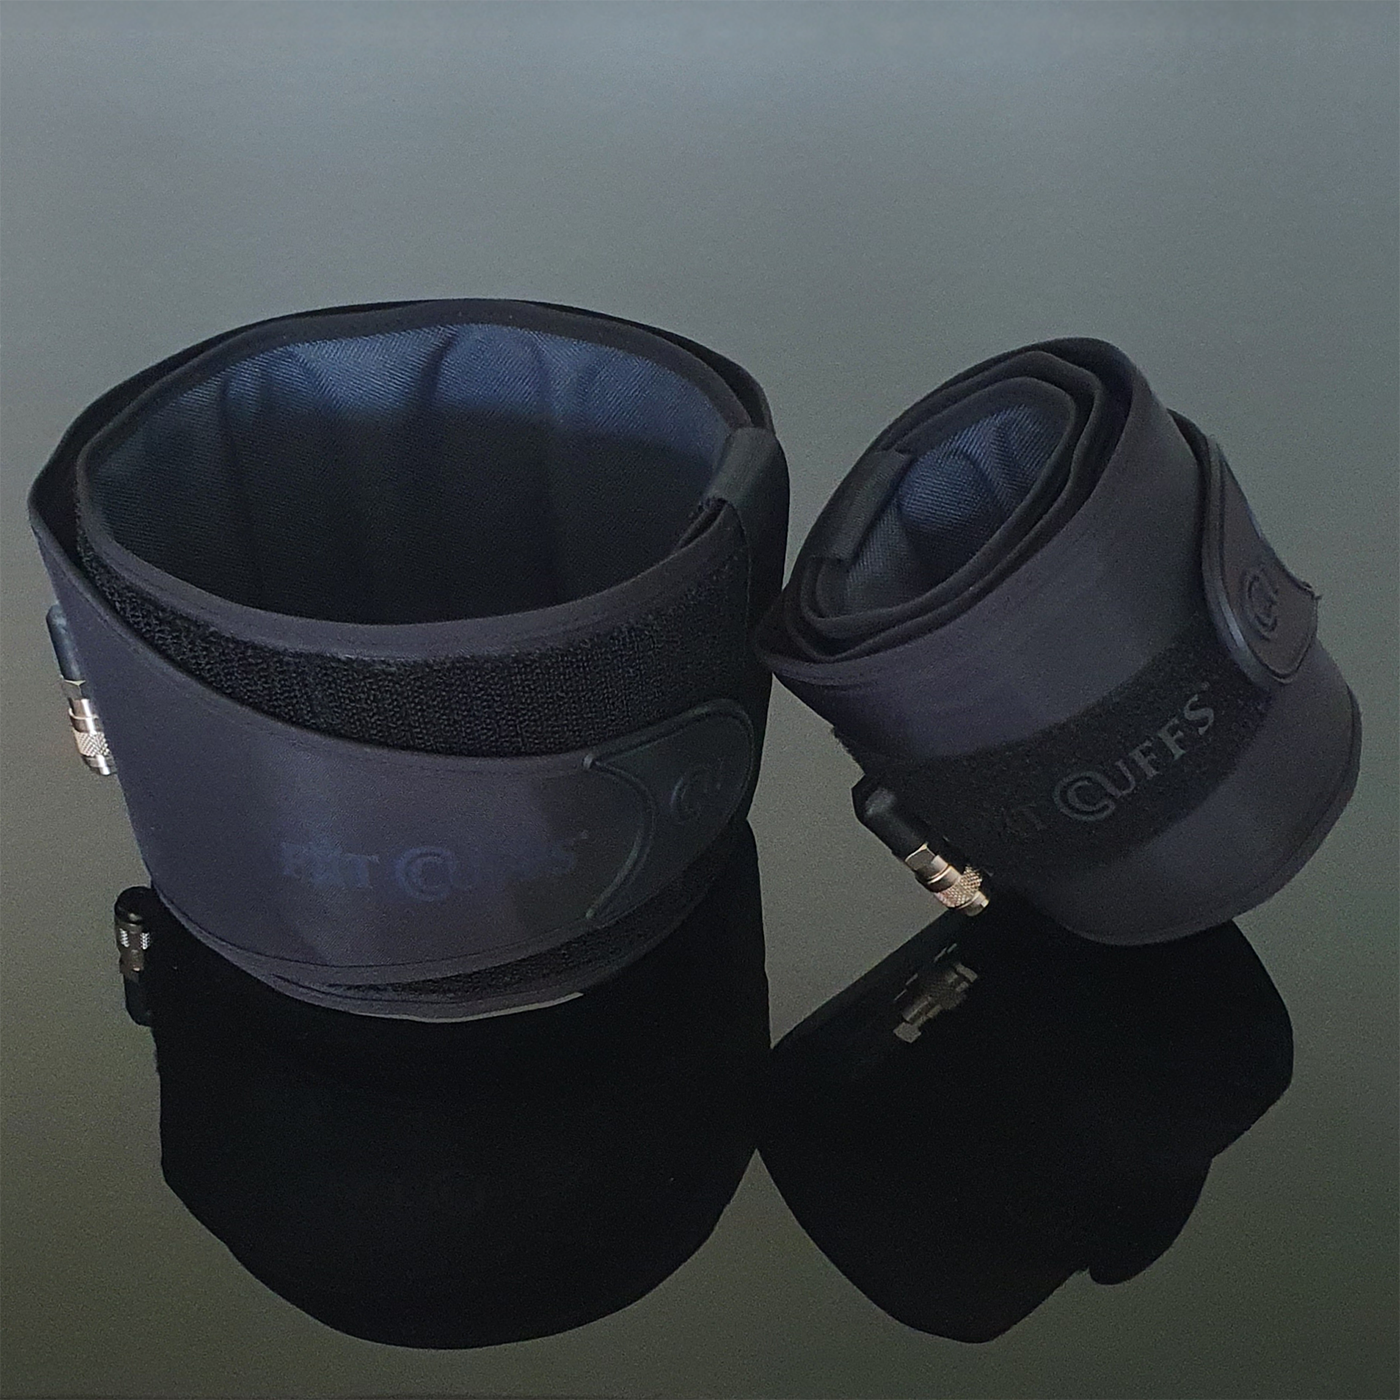 Billede af Fit Cuffs - Performance Lower V3.1 - Wireless (Long + Short tube) - Black